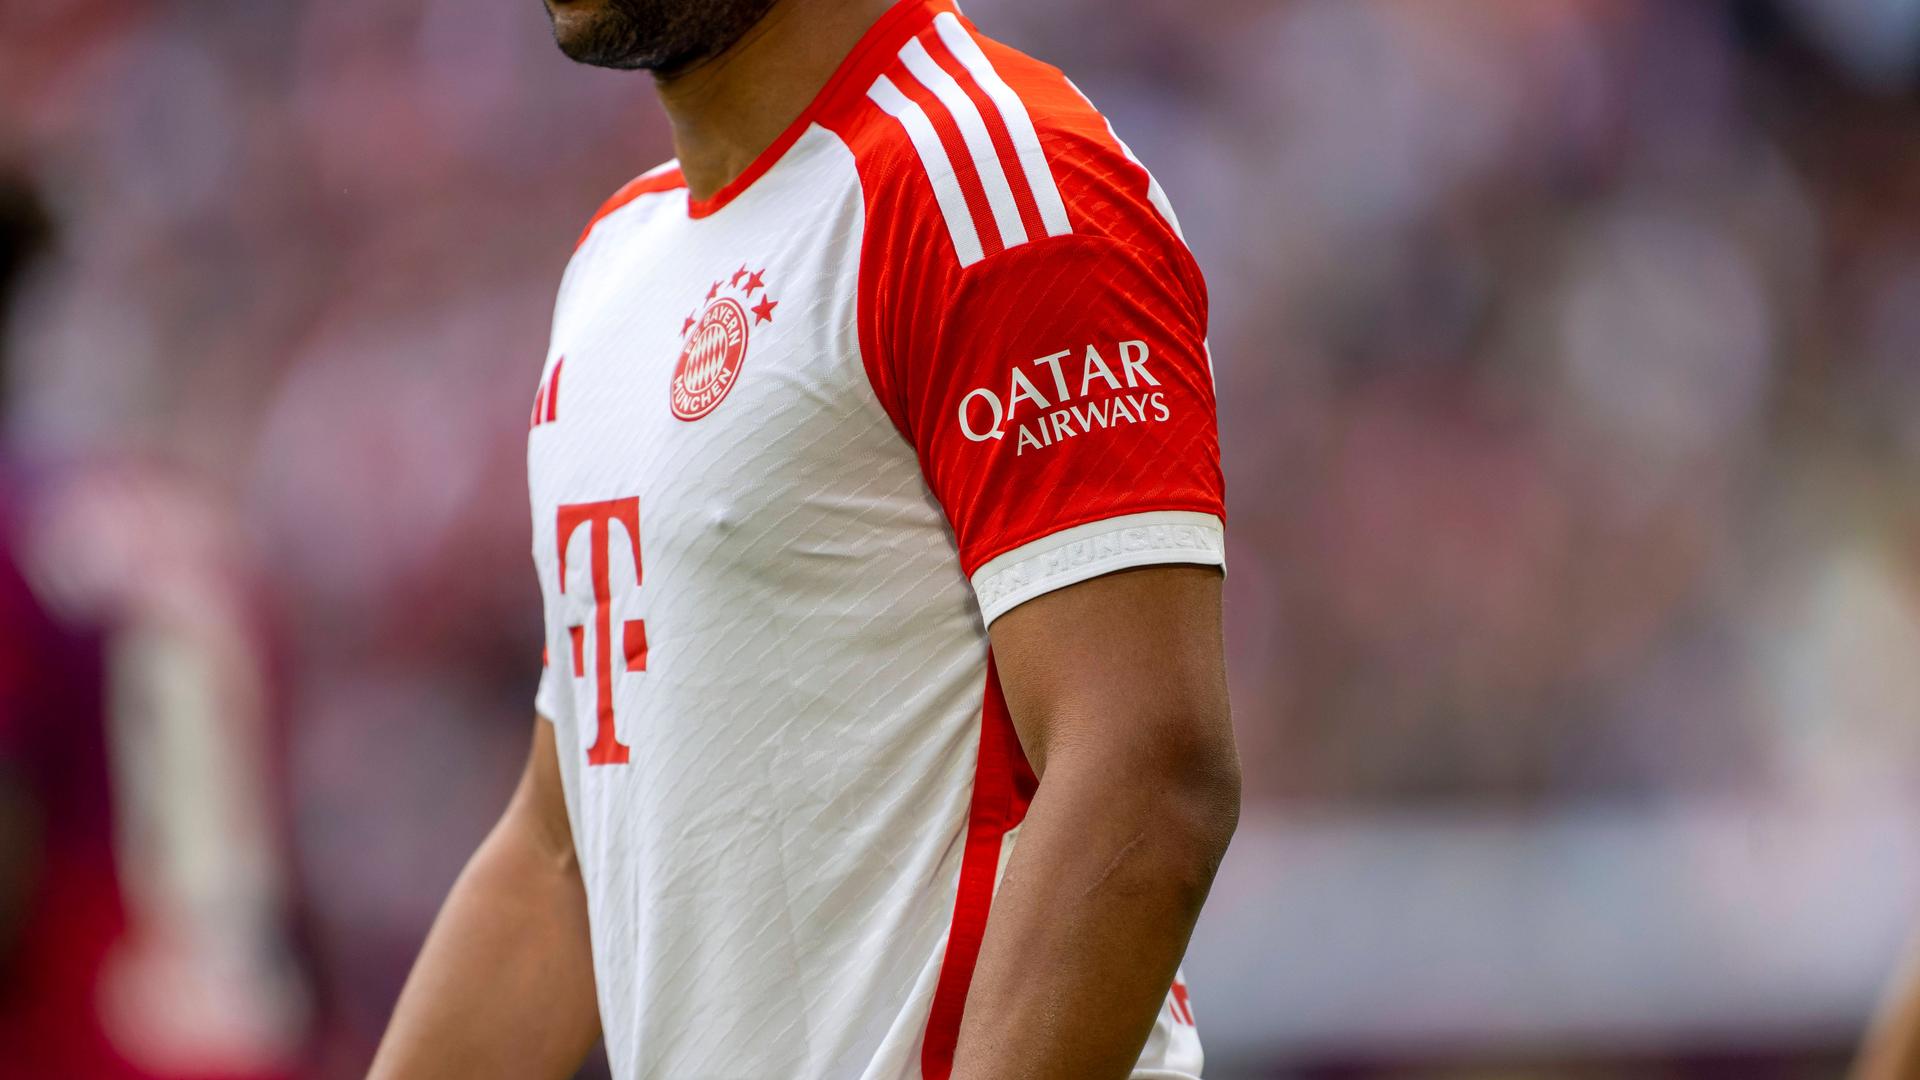 Bayern Münchens Trikot mit dem Ärmelsponsor Qatar Airways.